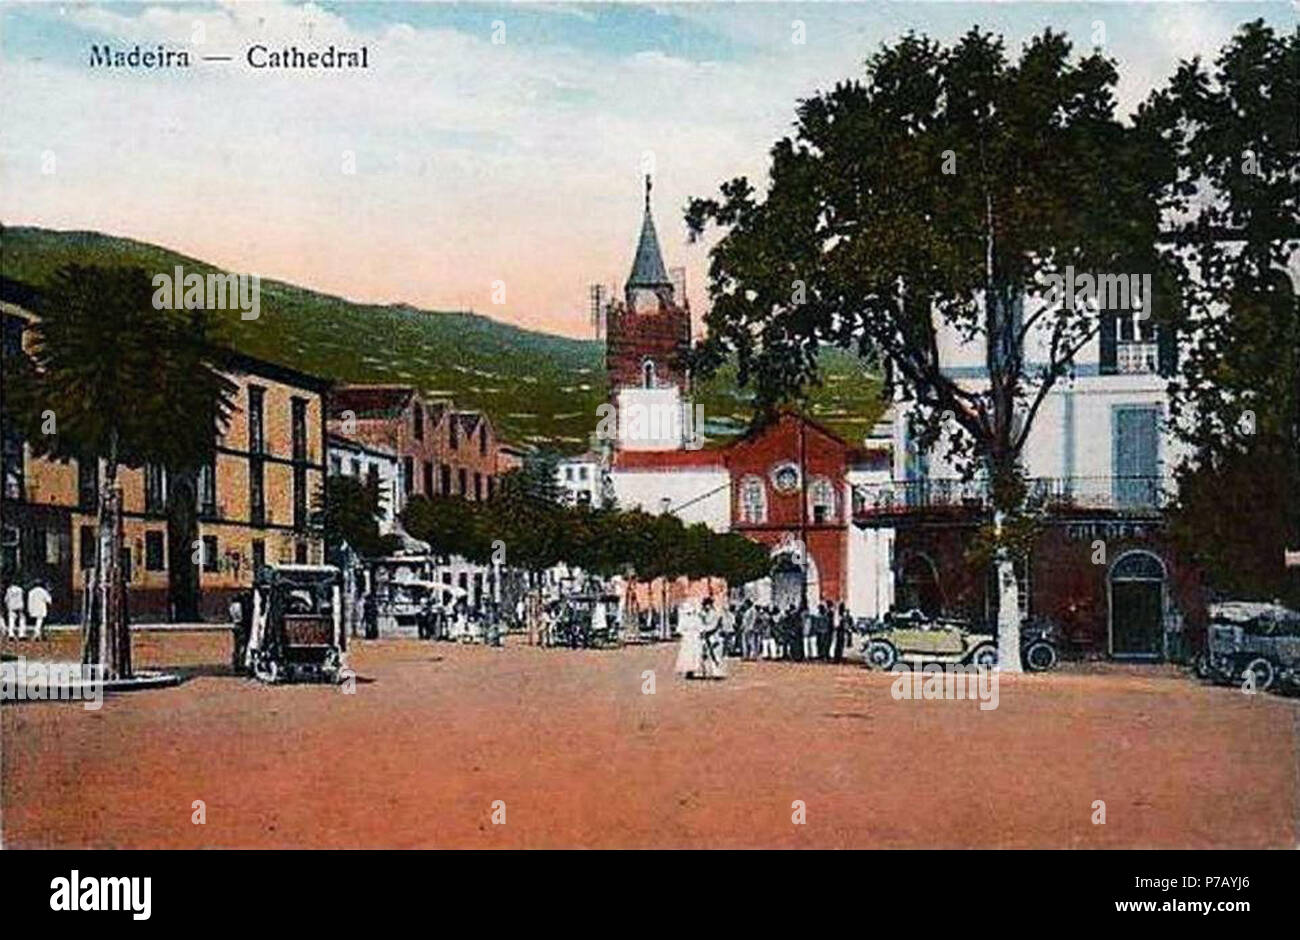 Português: Madeira. Kathedrale. Avenida Arriaga com Golden Gate e Sé do Funchal. Animado Bilhete - Post, 1920 (c.). Avenida Arriaga, Funchal, Ilha da Madeira. ca. 1920 54 Madeira - Dom Stockfoto